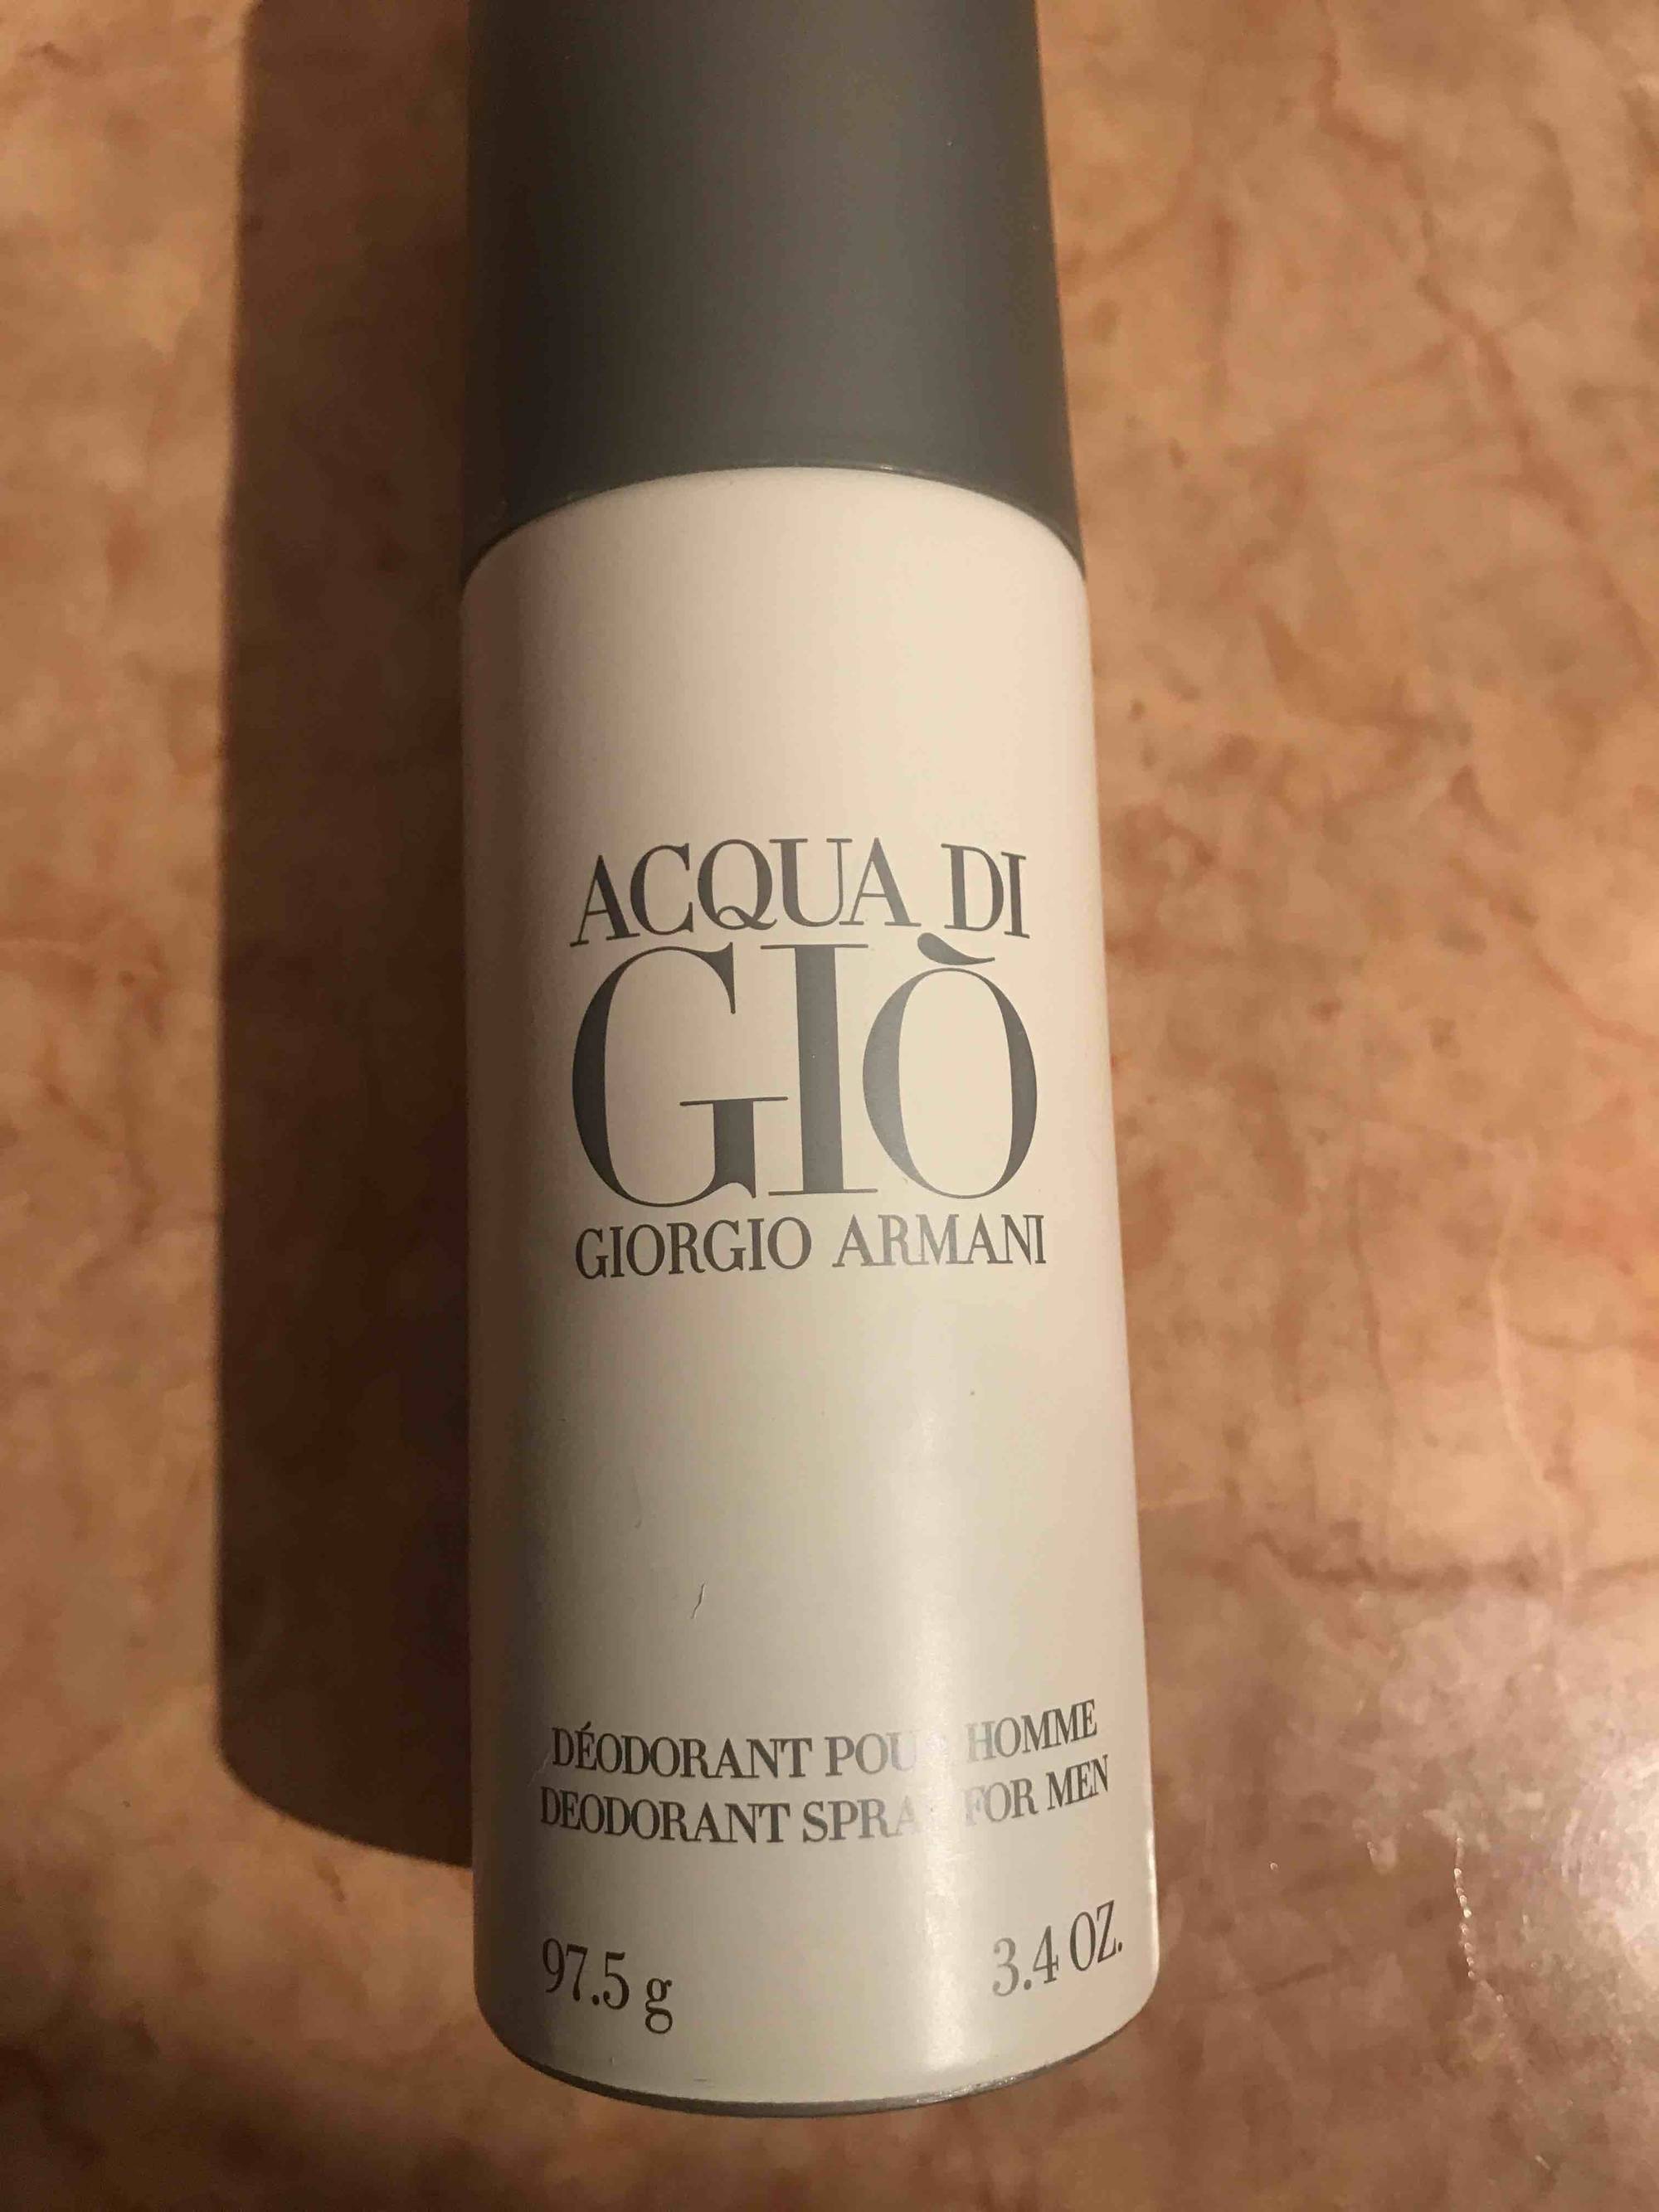 GIORGIO ARMANI - Acqua di Gio - Déodorant pour homme